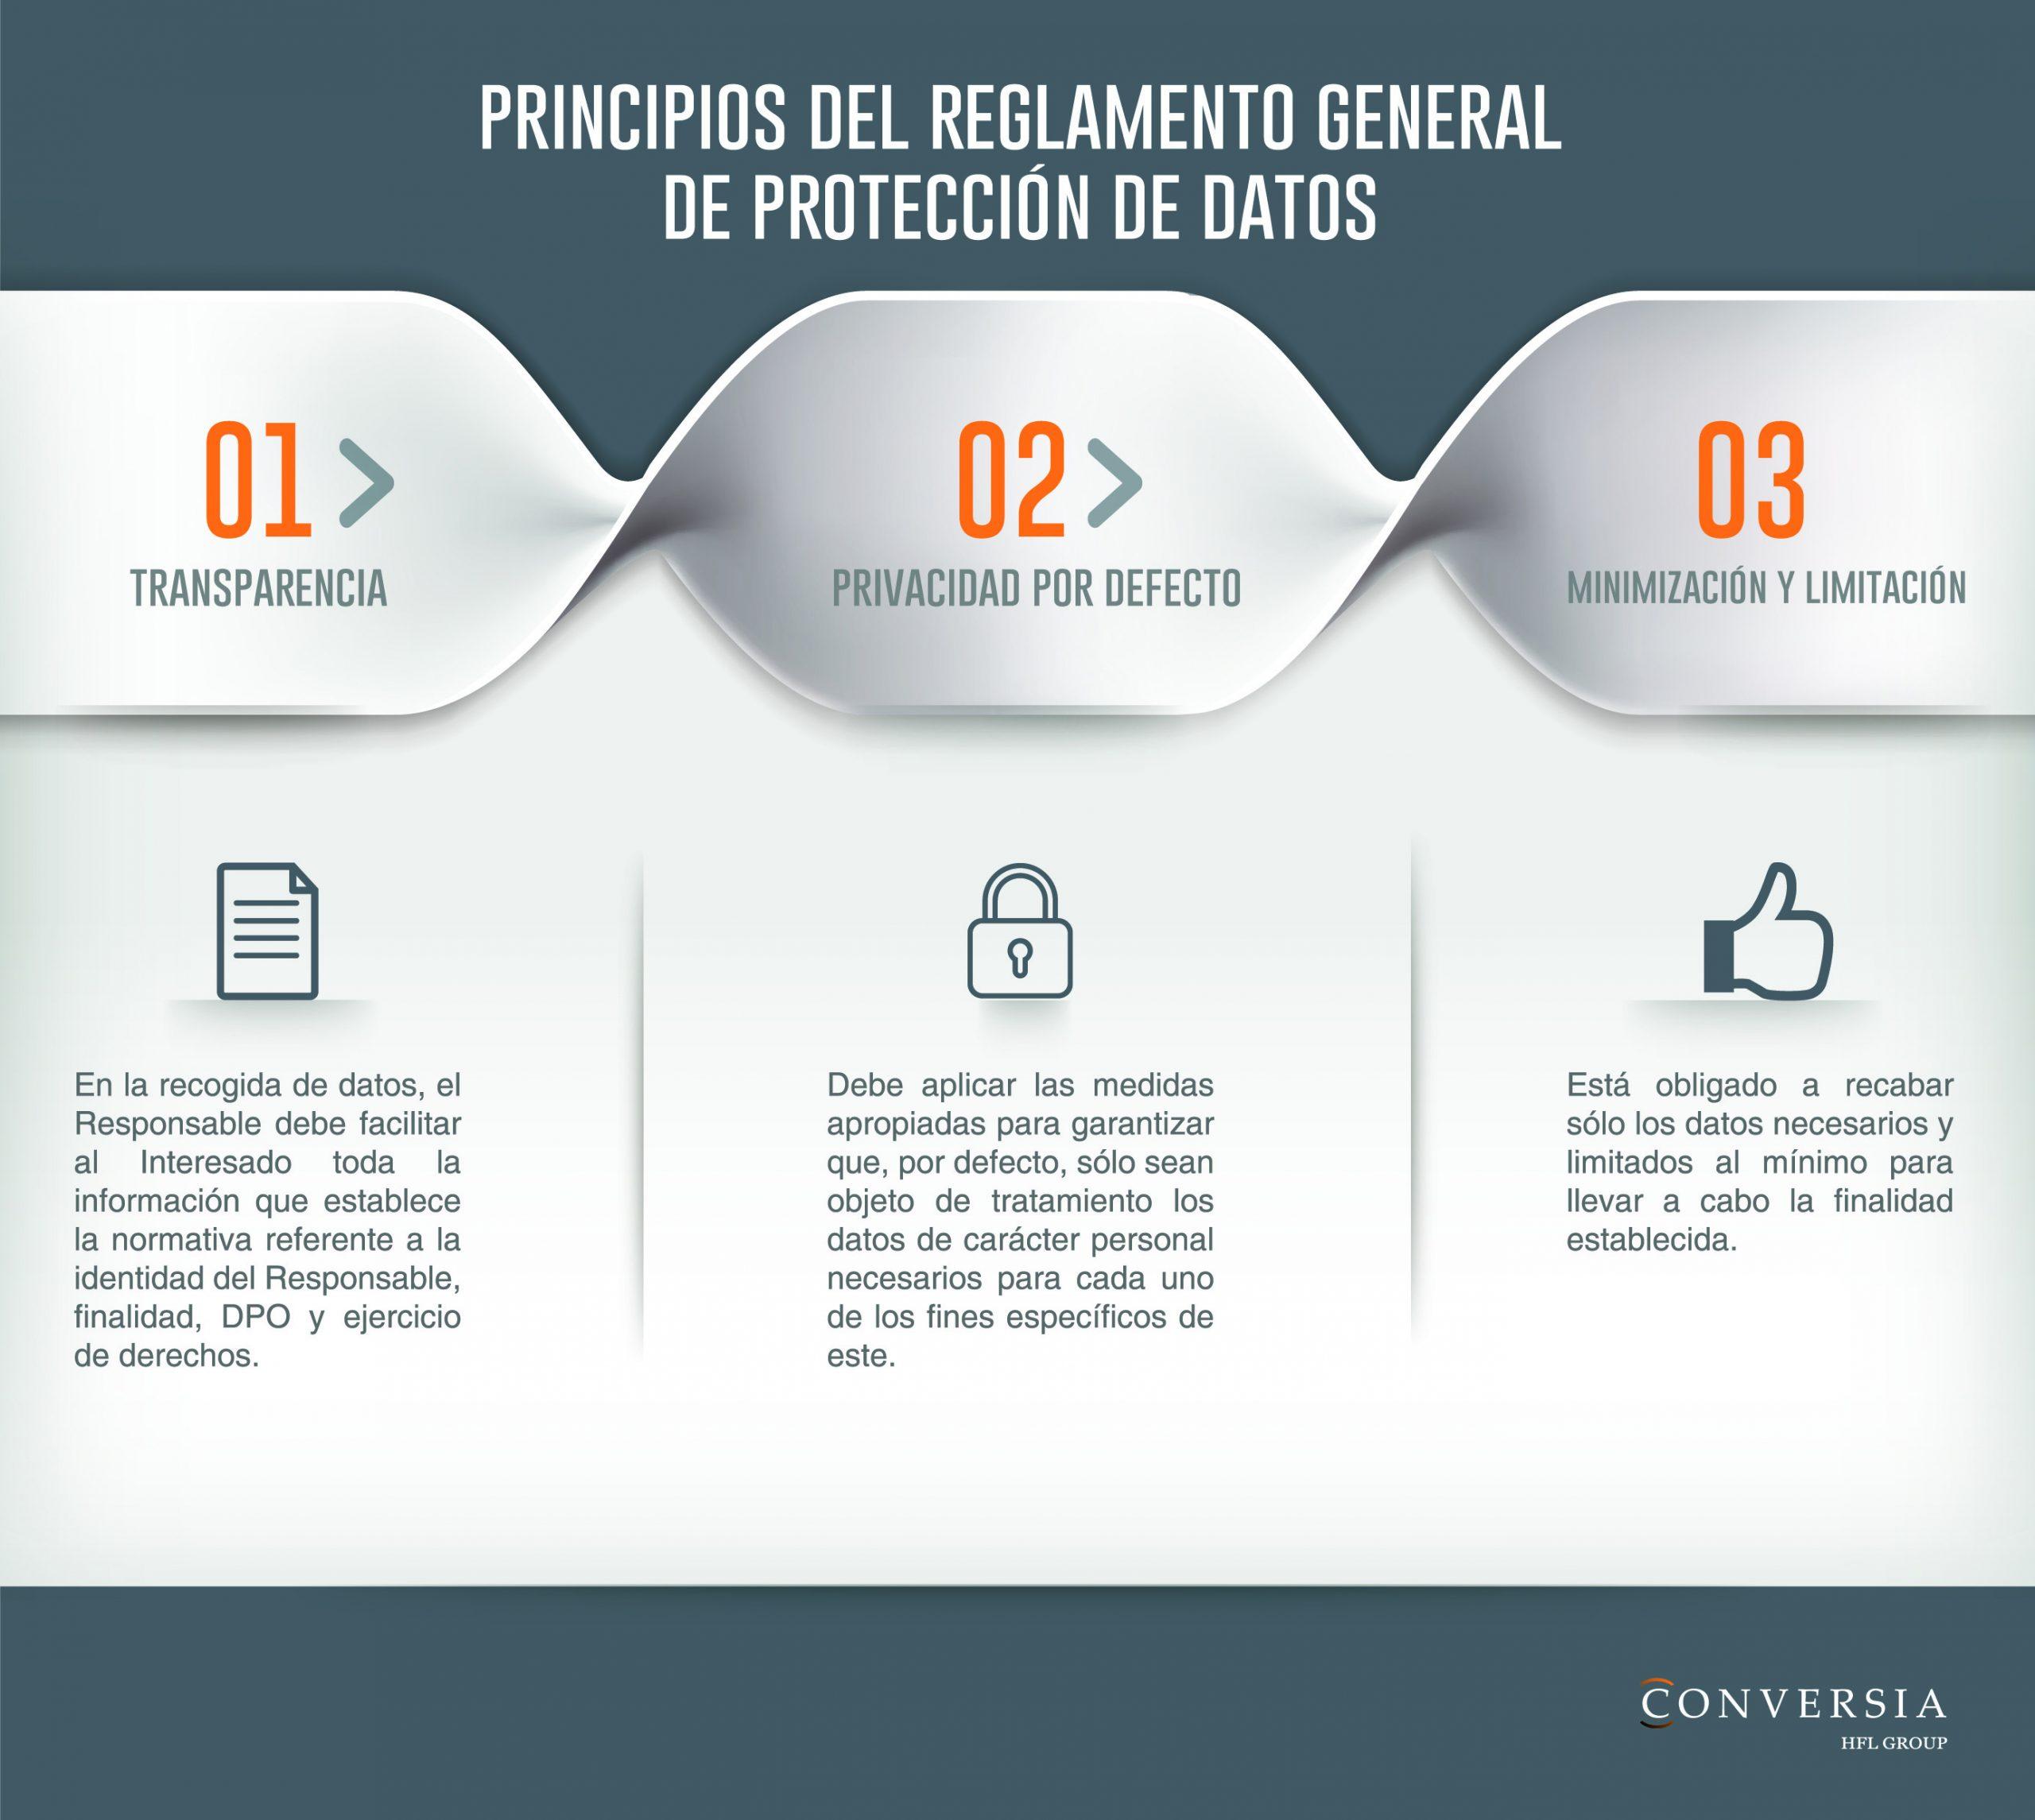 Principios del Reglamento General de Protección de Datos